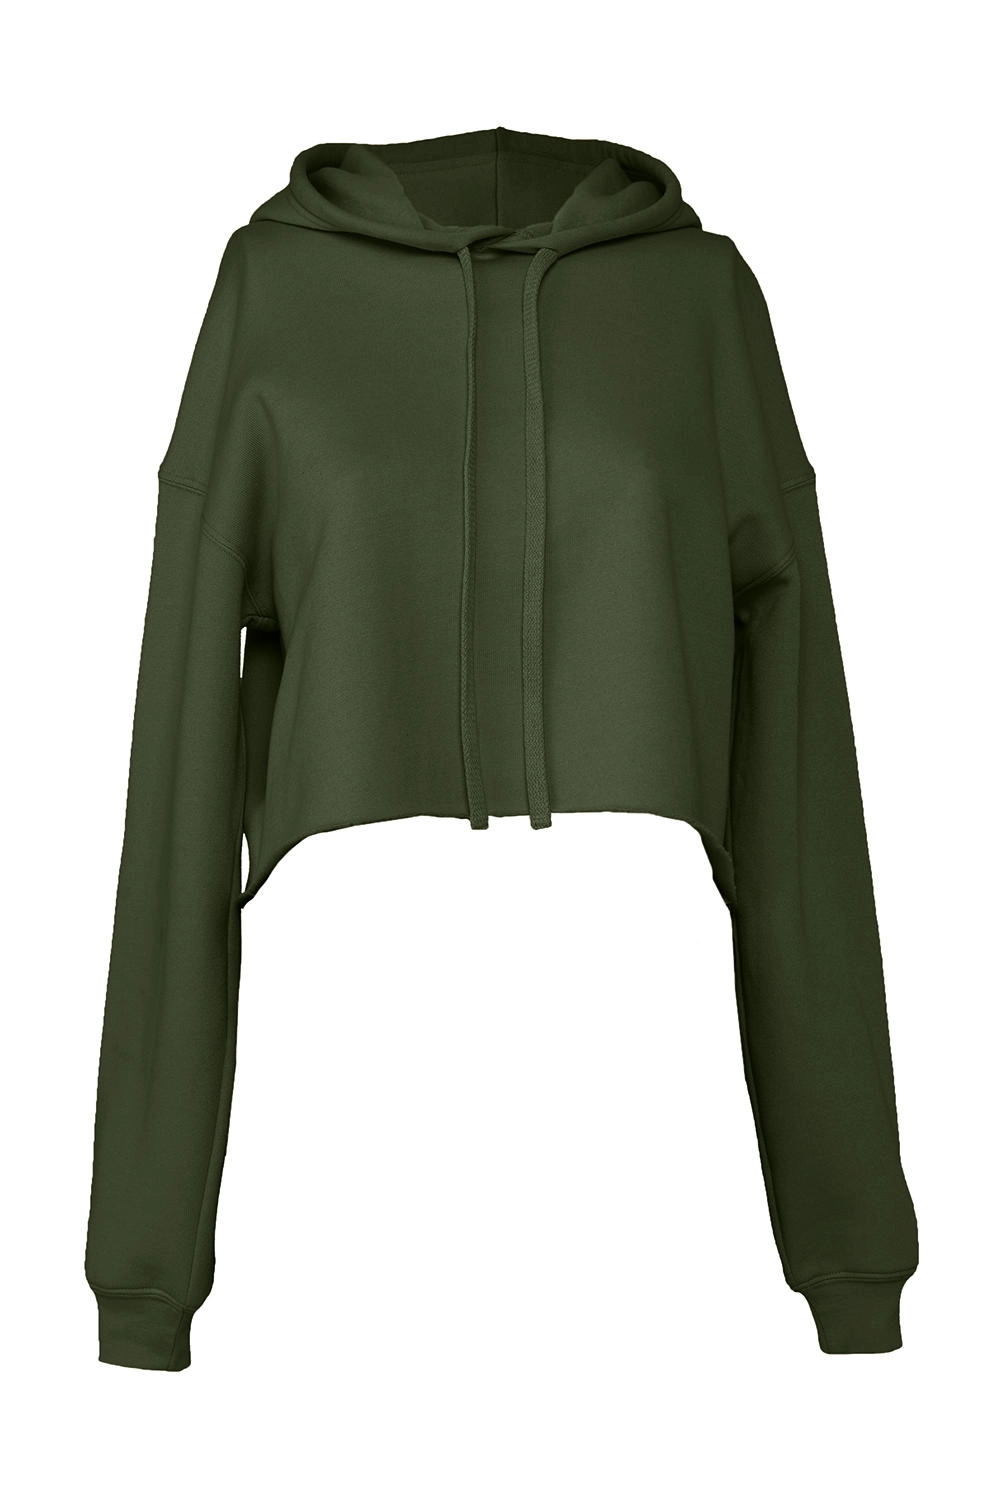 Women`s Cropped Fleece Hoodie zum Besticken und Bedrucken in der Farbe Military Green mit Ihren Logo, Schriftzug oder Motiv.